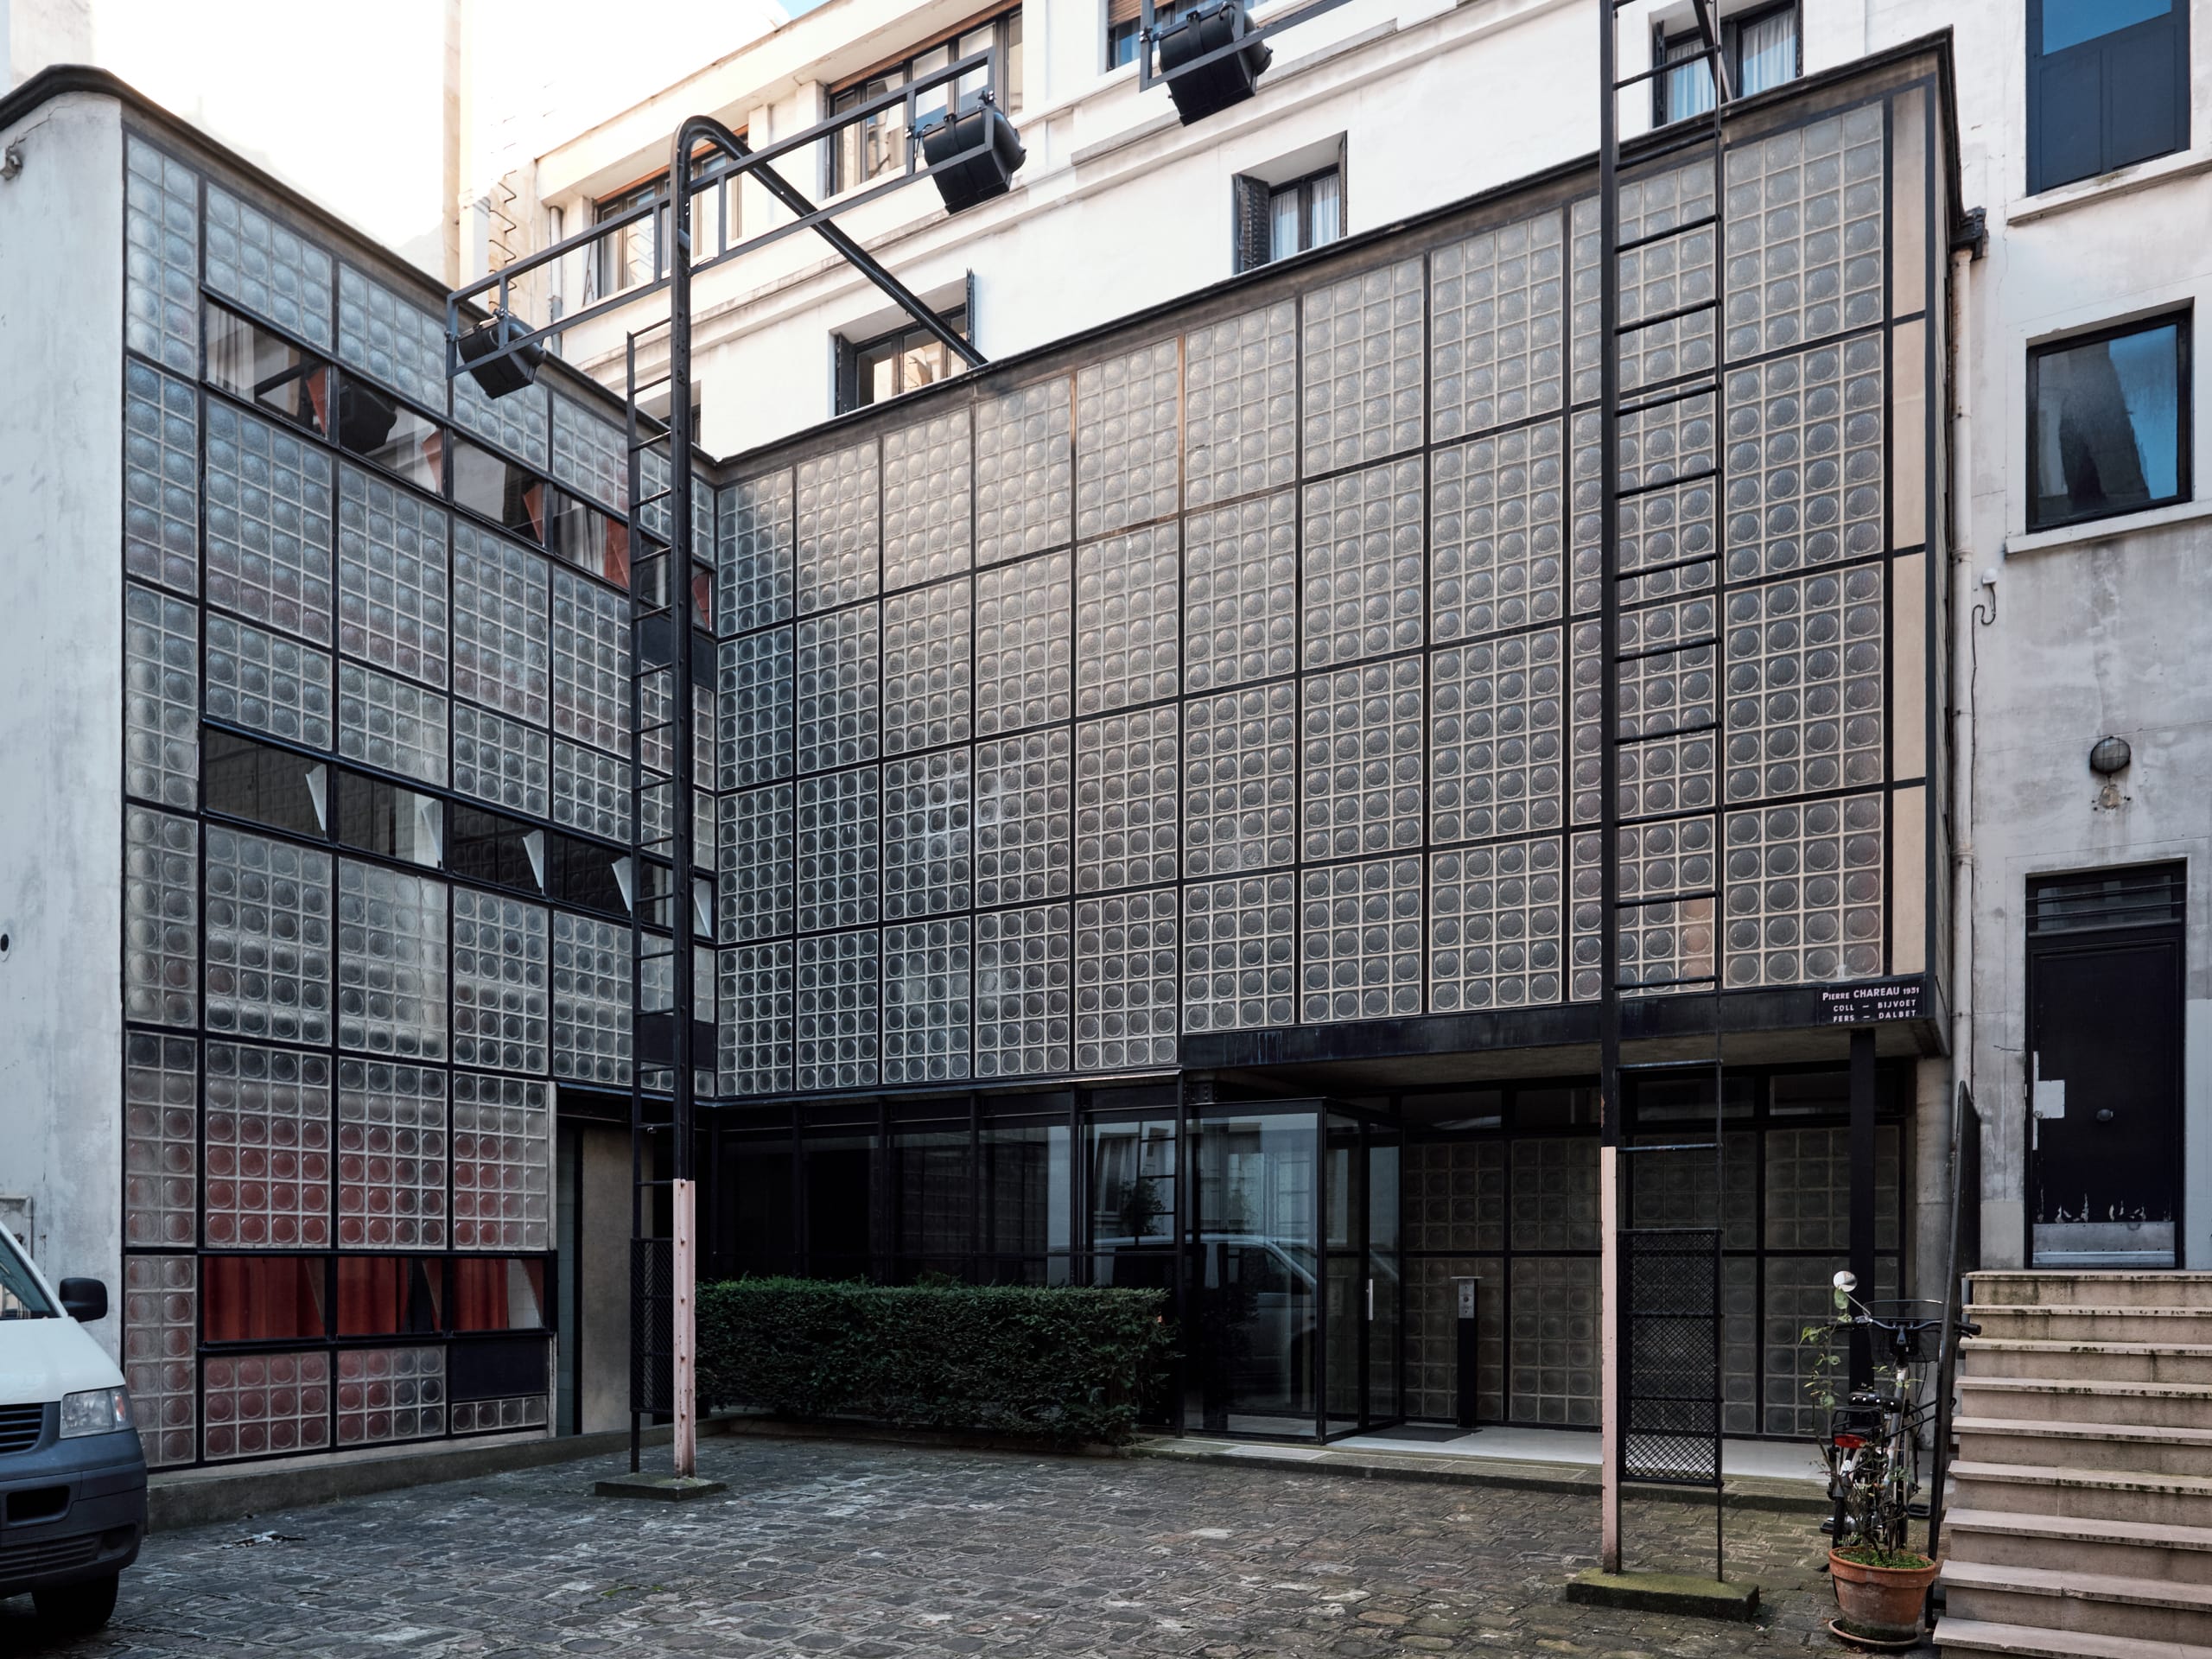 Blick auf ein Gebäude, das fast vollständig aus Glasbausteinen besteht. Pierre Chareau, Maison de Verre, Paris, Foto: August Fischer, CC BY-ND 2.0, via flickr